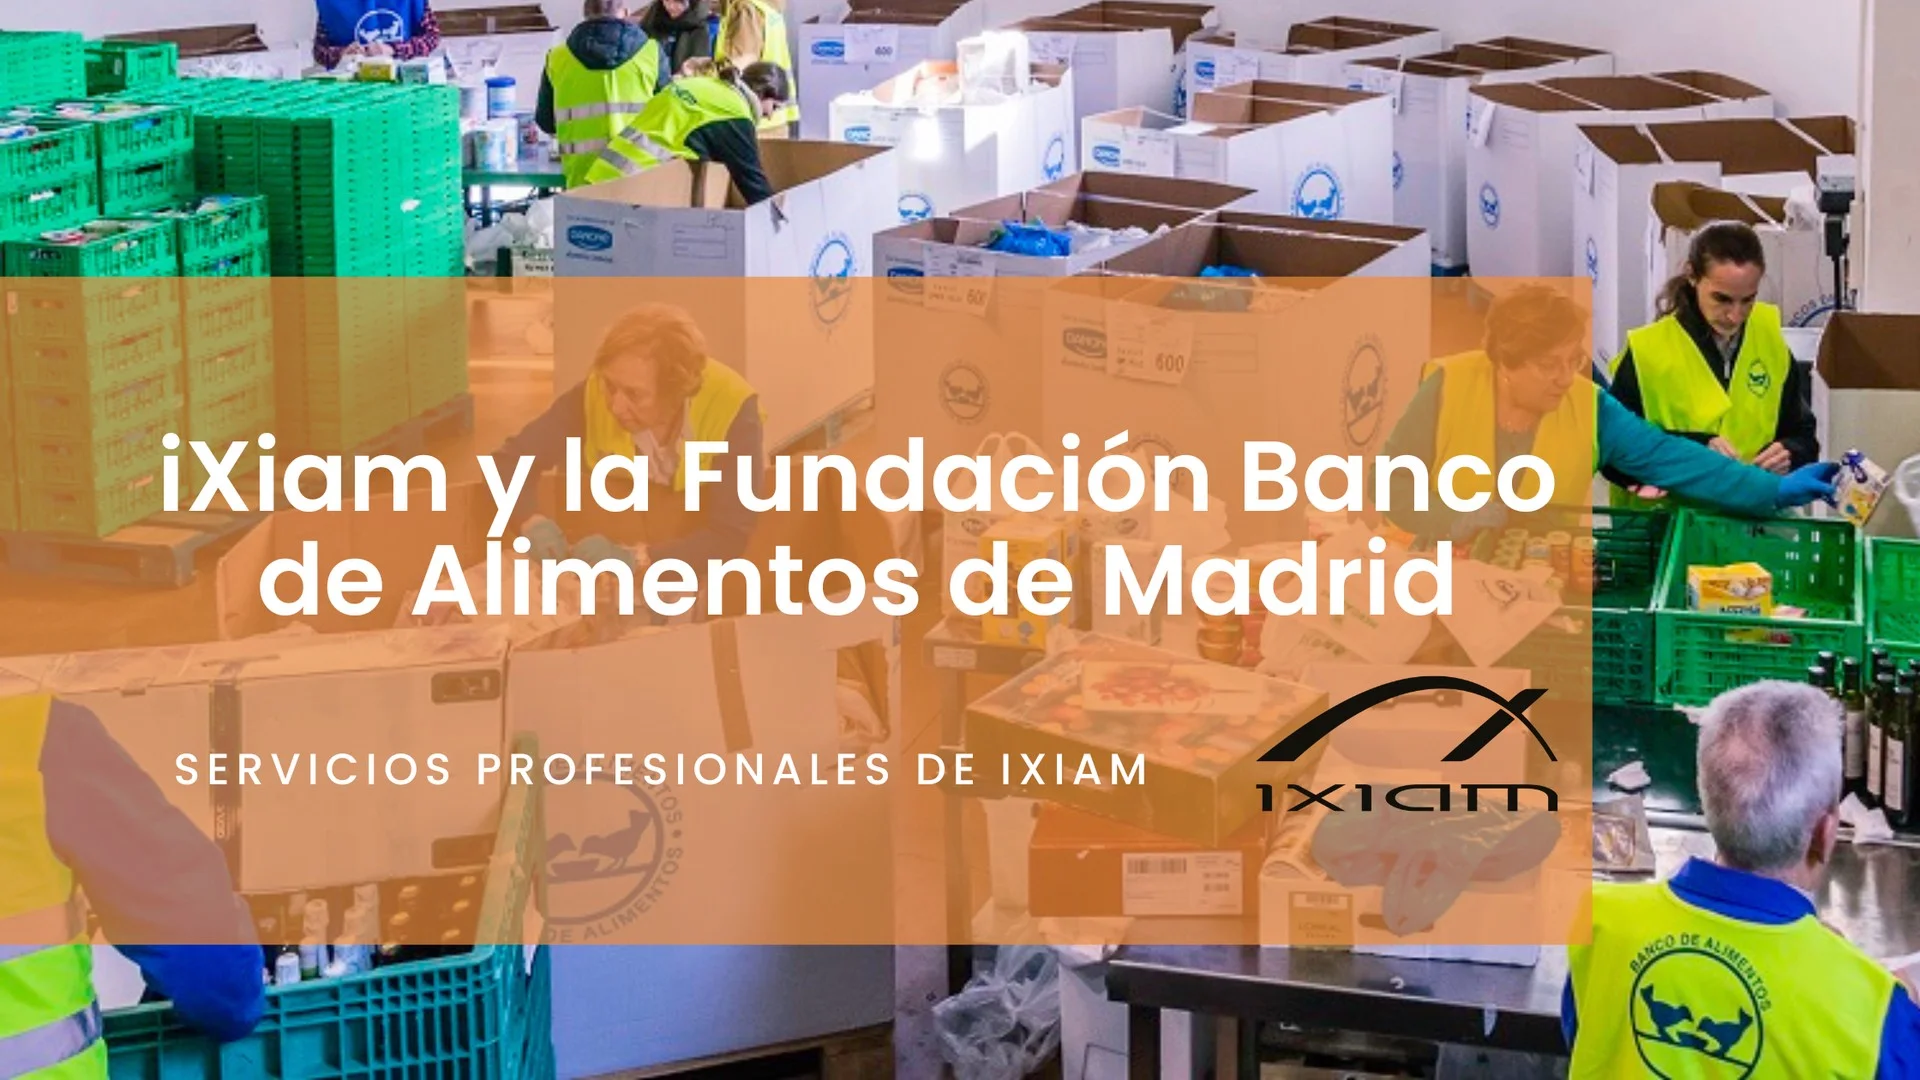 iXiam y el Banco de Alimentos de Madrid trabajan mano a mano para mejorar la vida de los más necesitados.